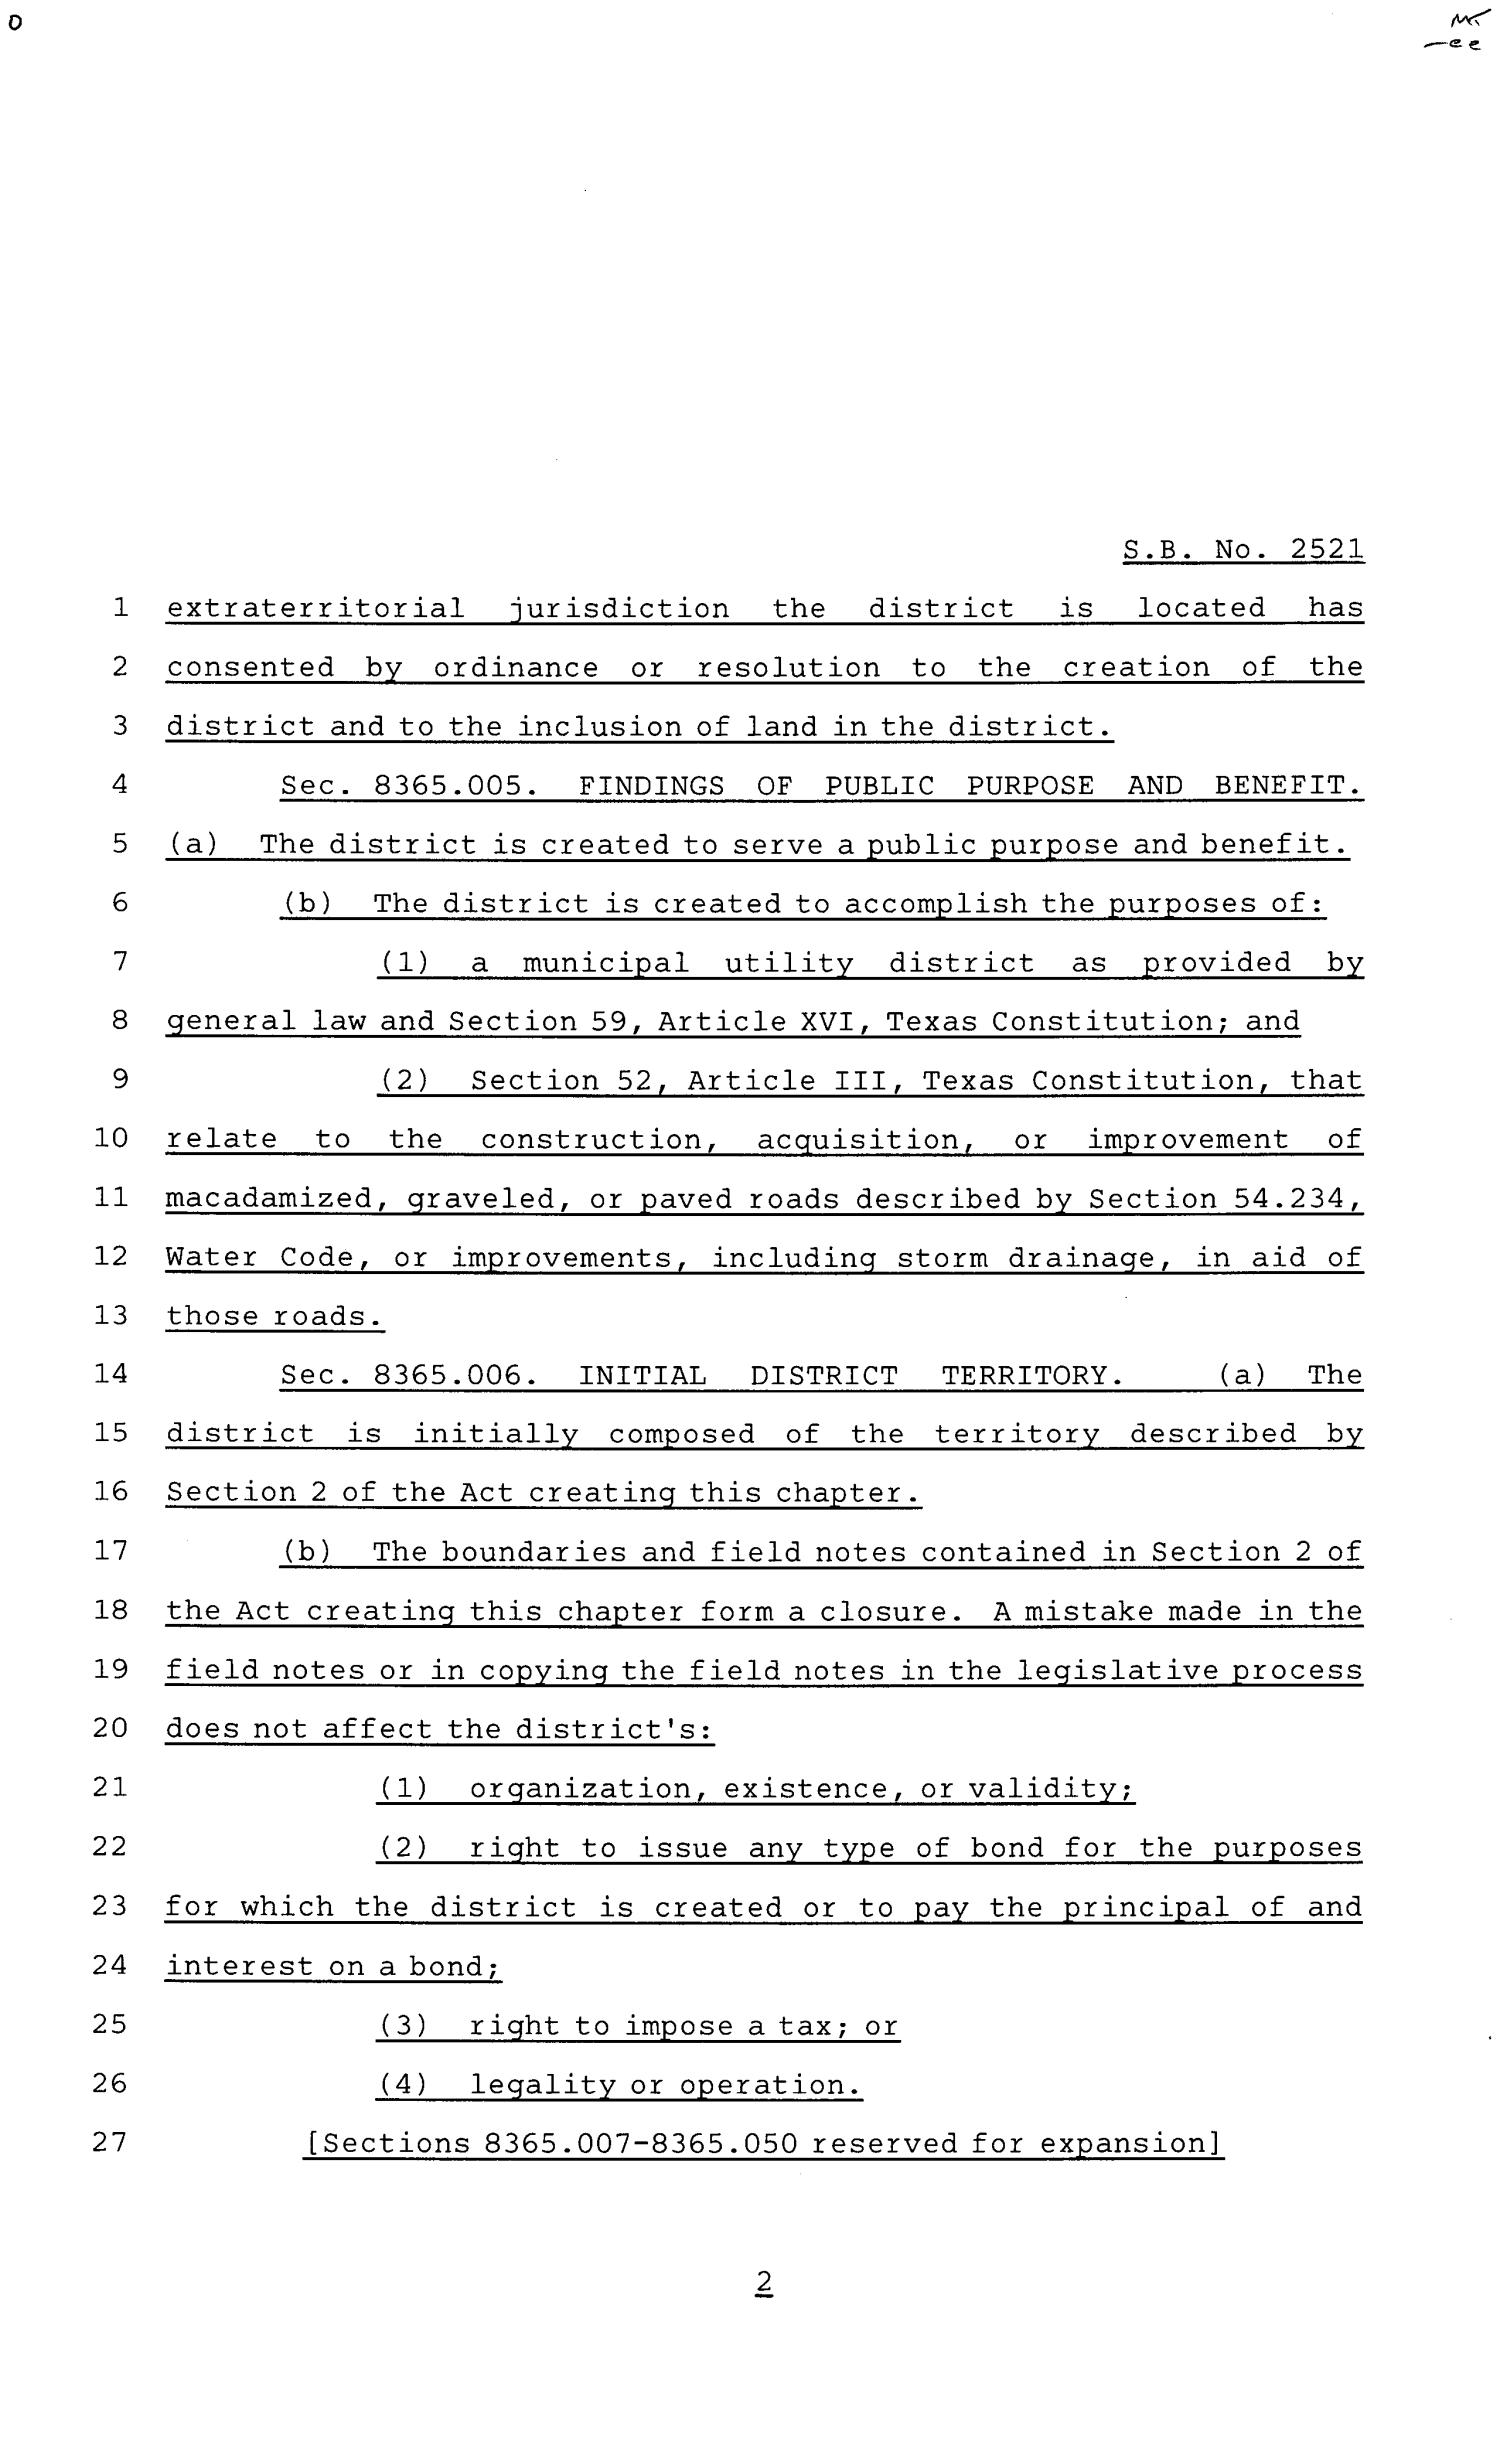 81st Texas Legislature, Senate Bill 2521, Chapter 880
                                                
                                                    [Sequence #]: 2 of 28
                                                